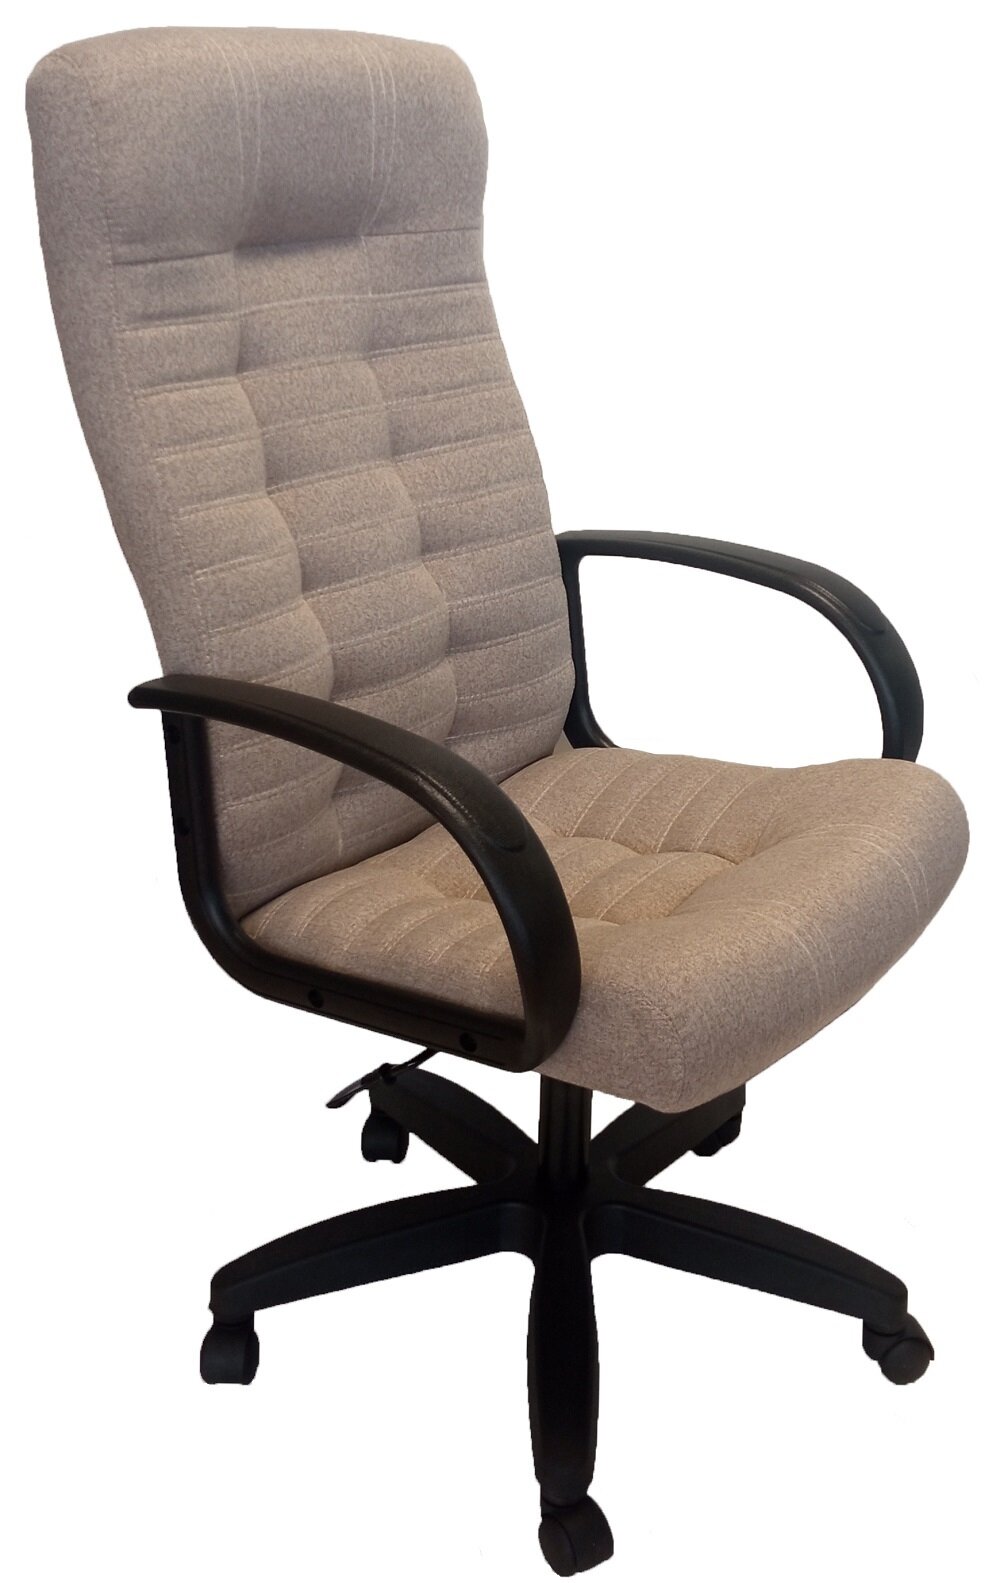 Компьютерное кресло StylChairs Атлант Ультра офисное обивка: ткань